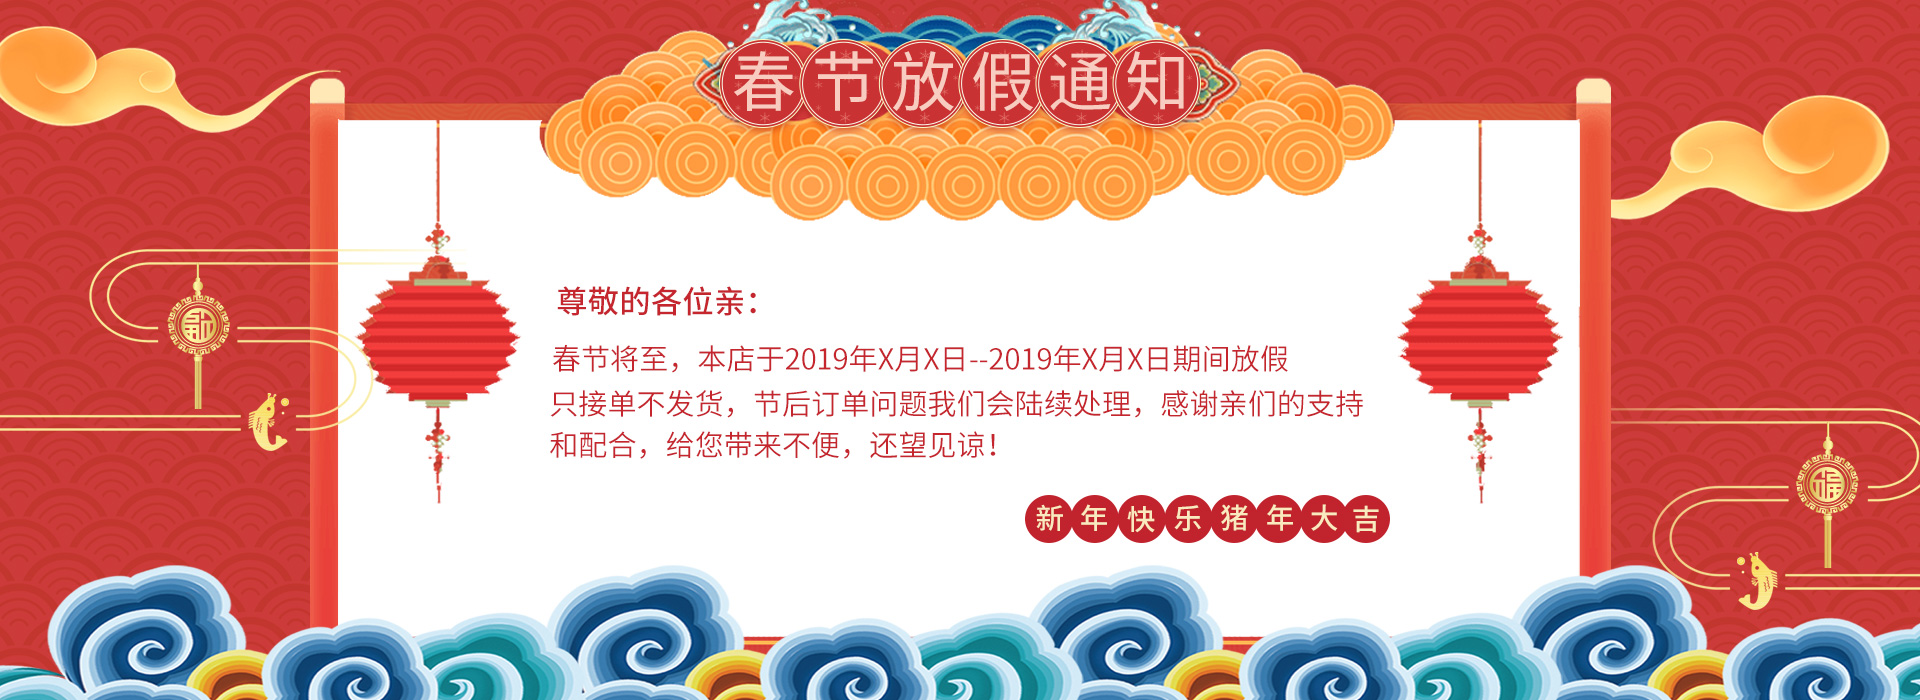 淘宝天猫春节放假中国风海报店铺发货通知banne图片